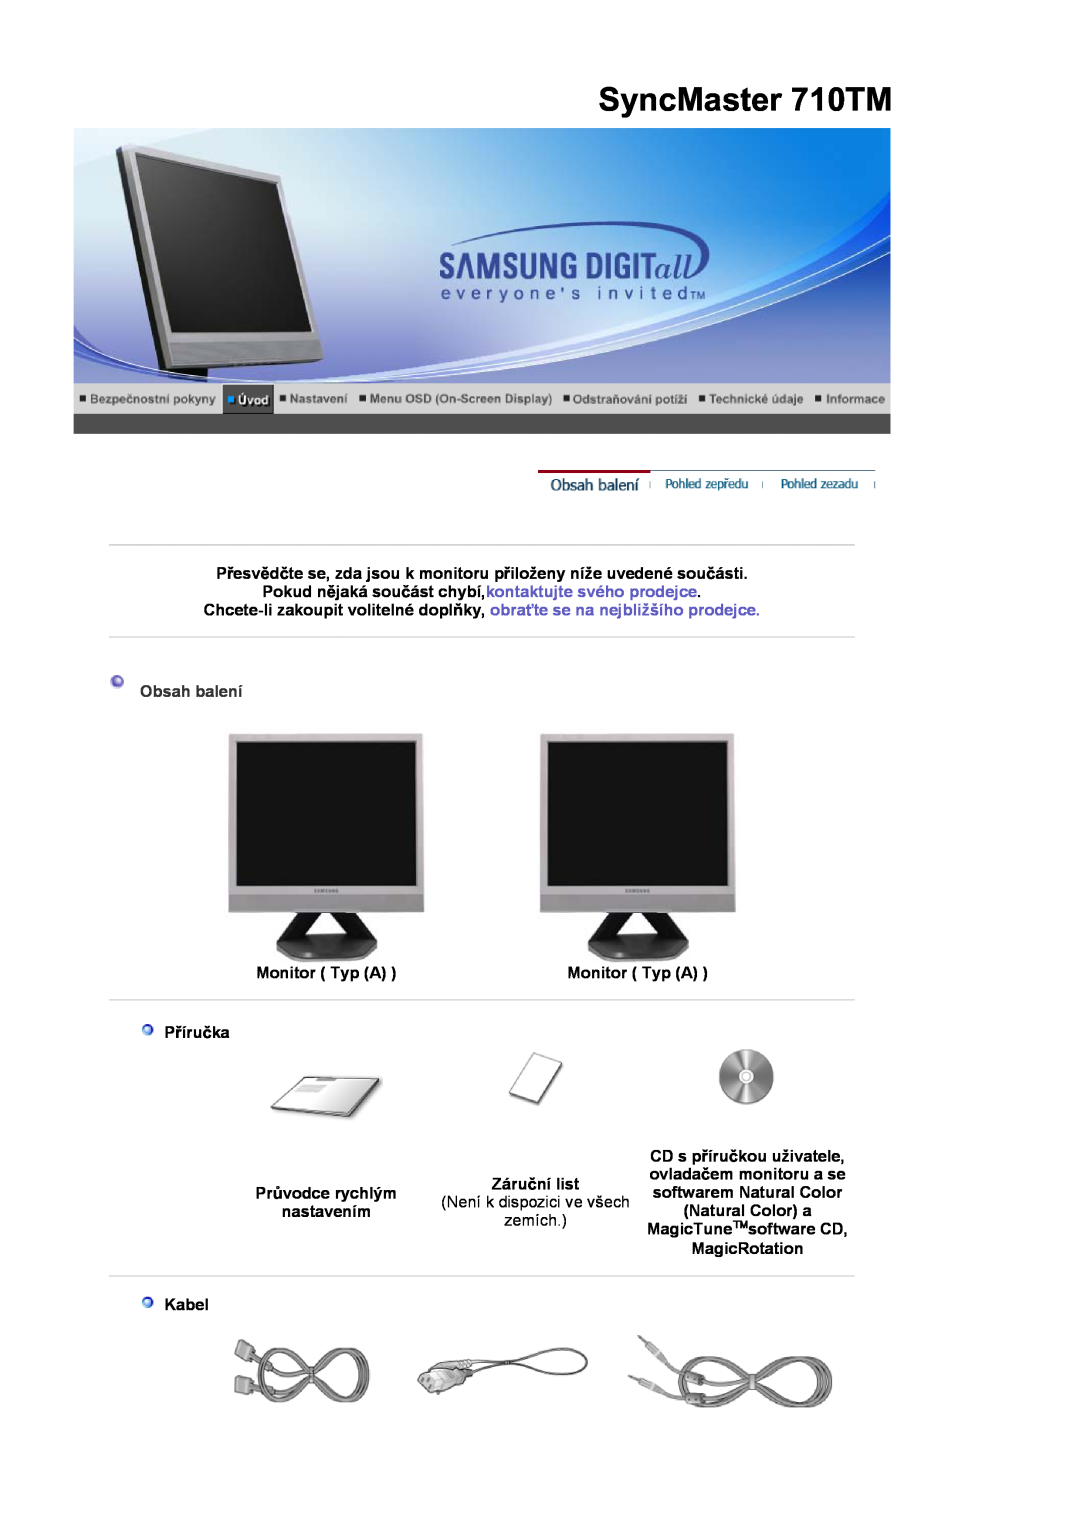 Samsung LS17MJSTSE/EDC SyncMaster 710TM, PĜesvČdþte se, zda jsou k monitoru pĜiloženy níže uvedené souþásti, Obsah balení 